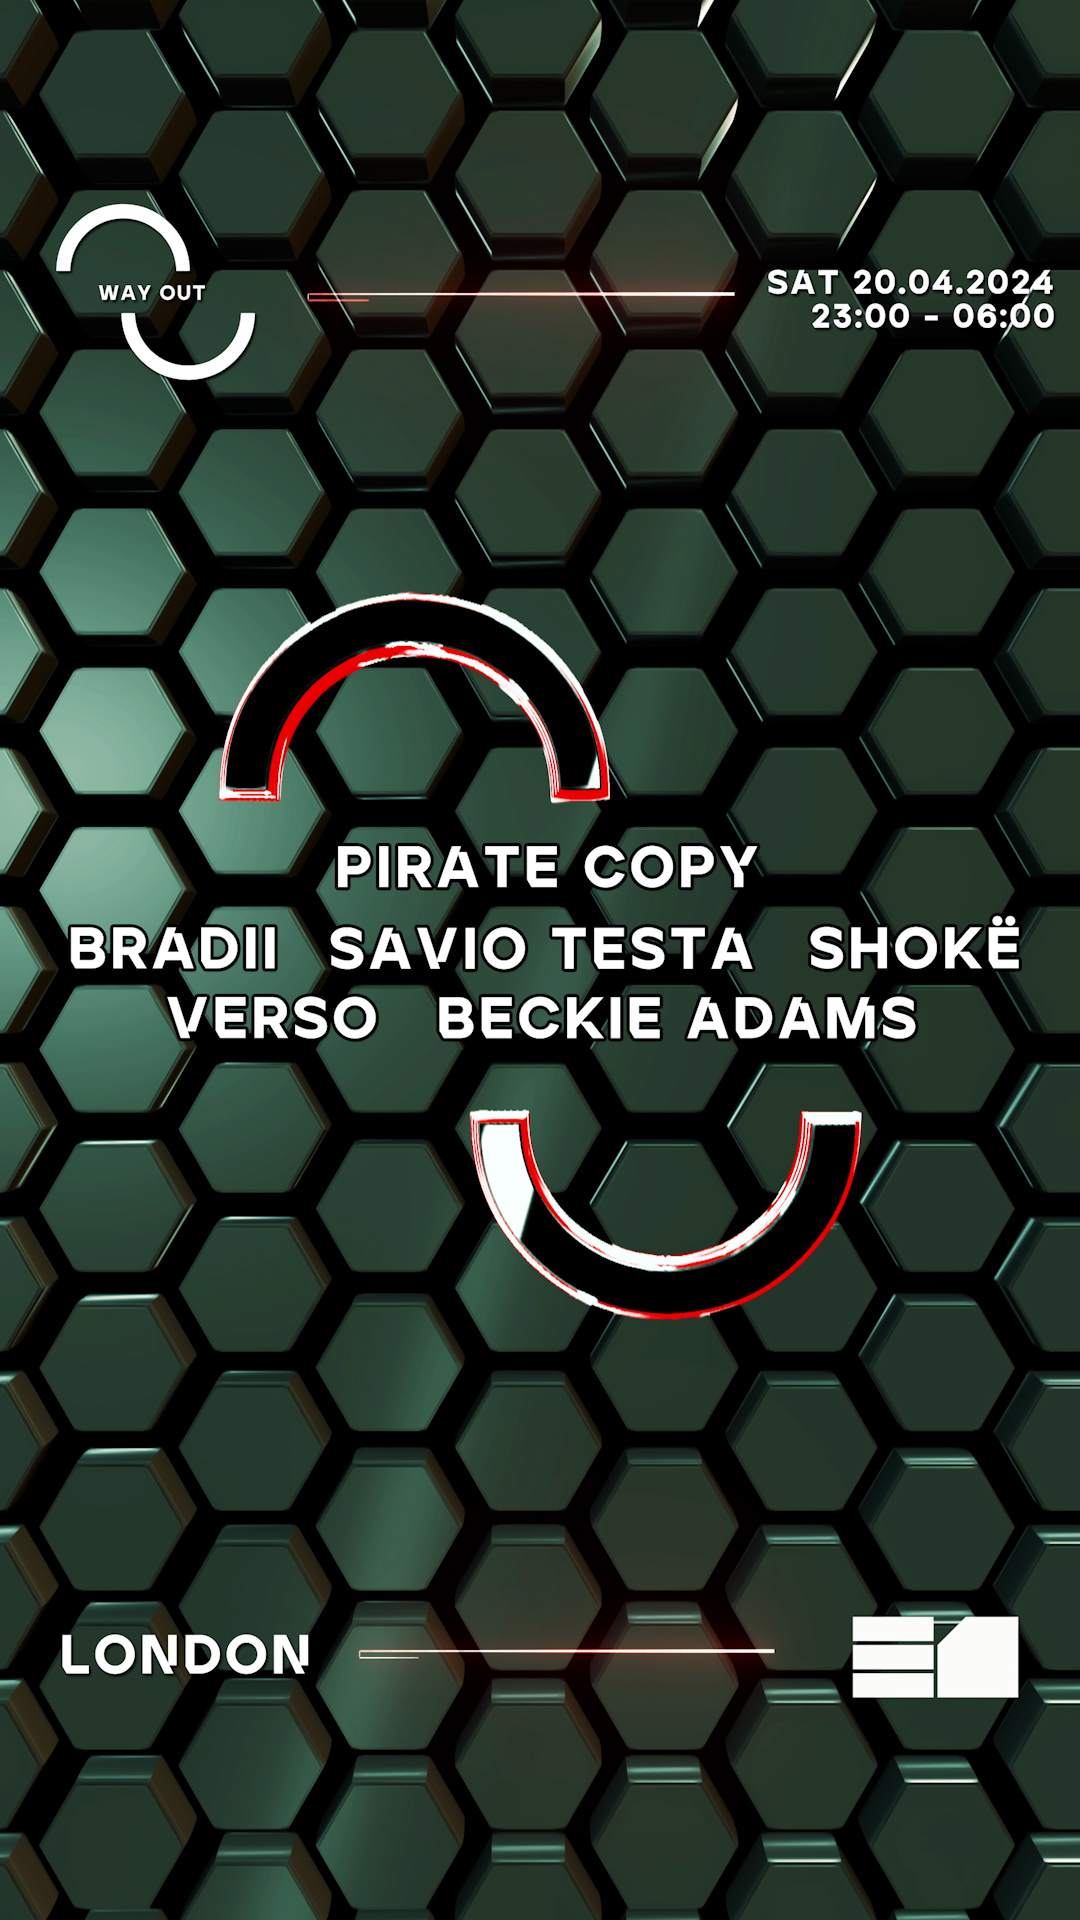 Way Out: Pirate Copy, BRADII & Savio Testa - Página trasera